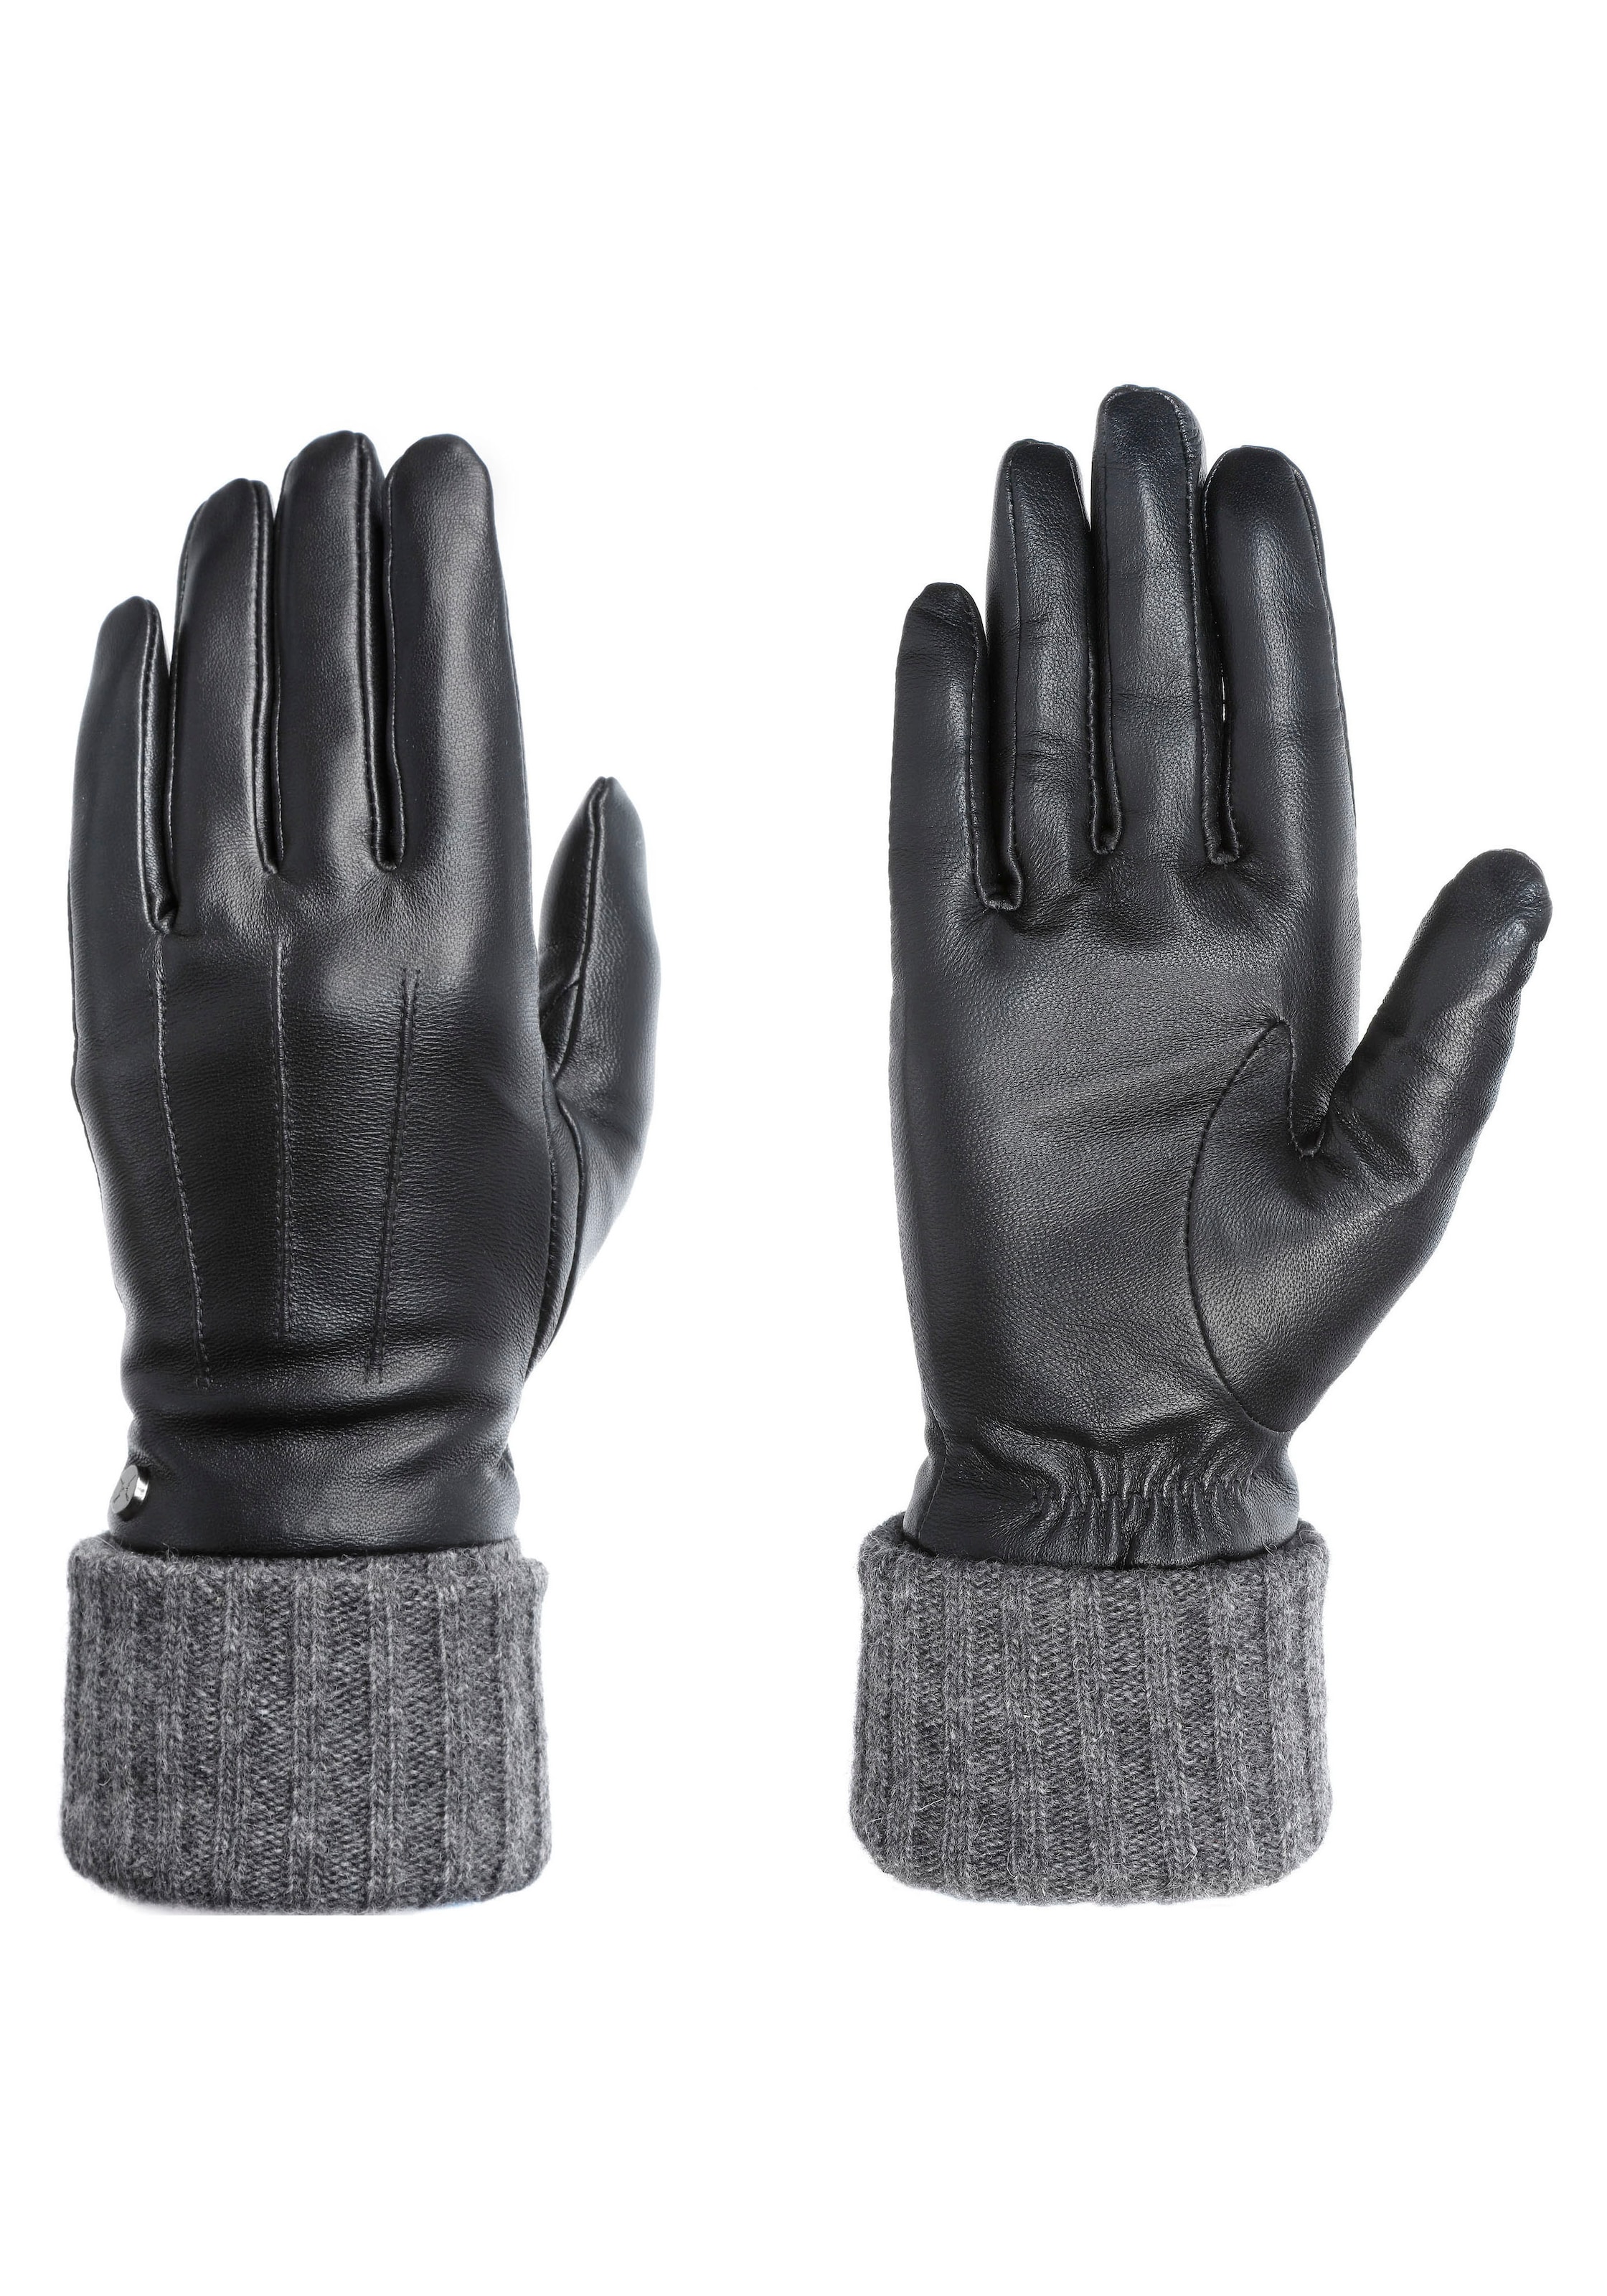 Damen Handschuhe SALE & Outlet BAUR Angebote ▷ günstige 